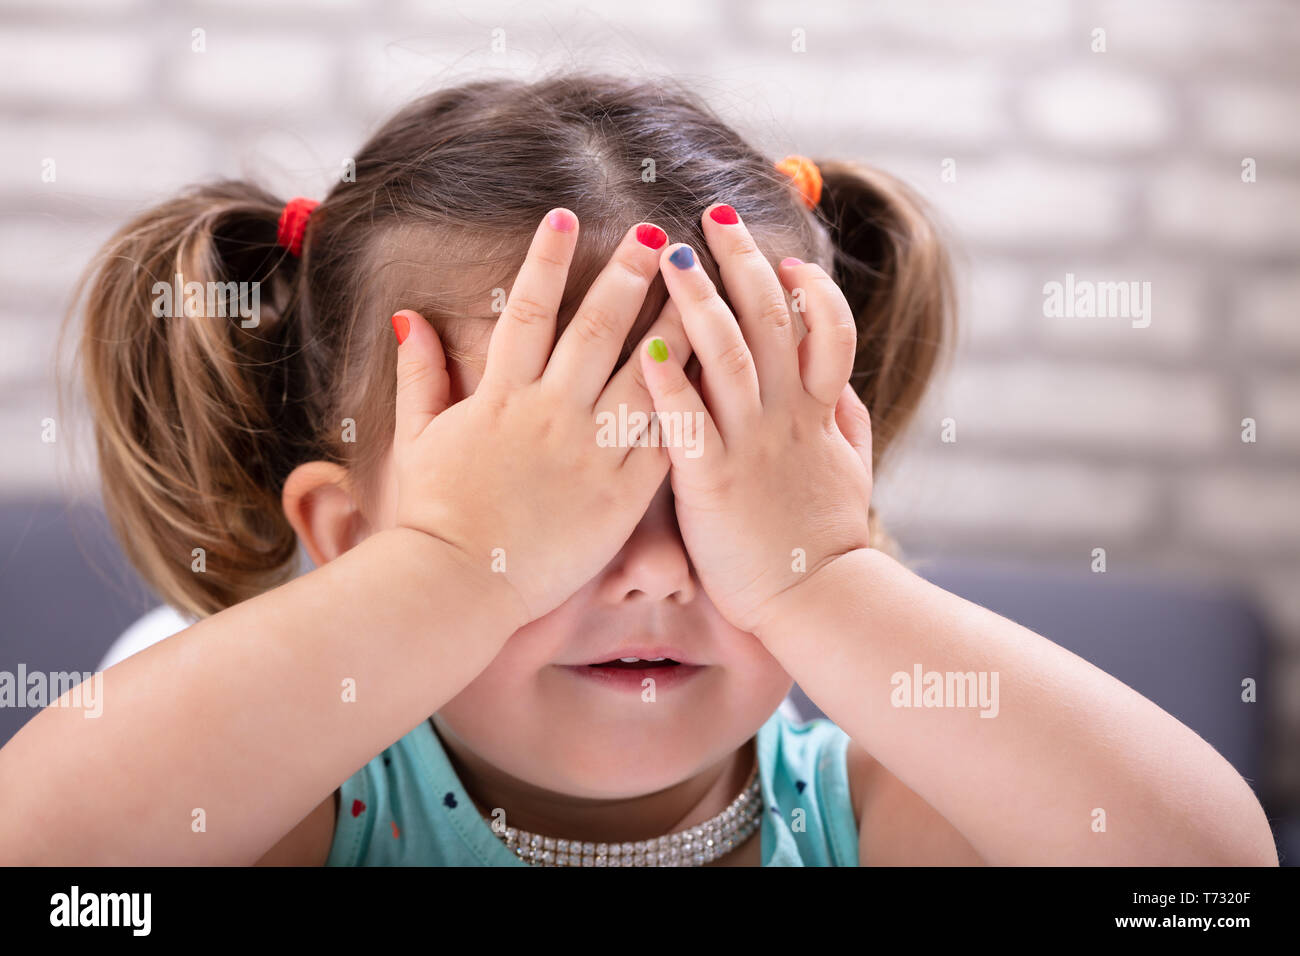 Vista frontal de la linda chica cubre sus ojos con la mano mostrando coloridos esmaltes de uñas Foto de stock